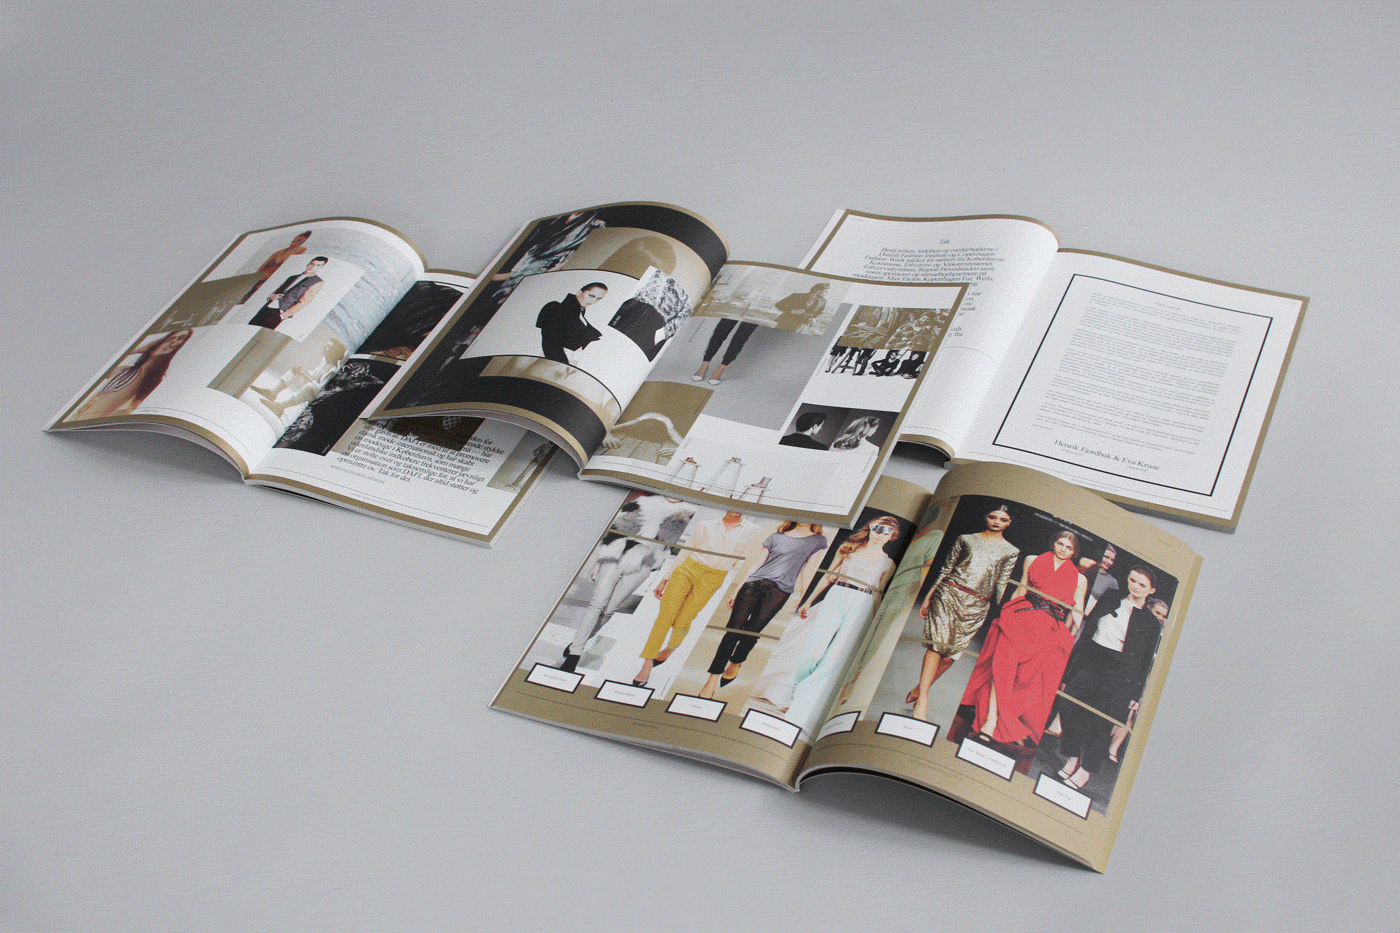 Danish Fashion Institute – Annual report 2011